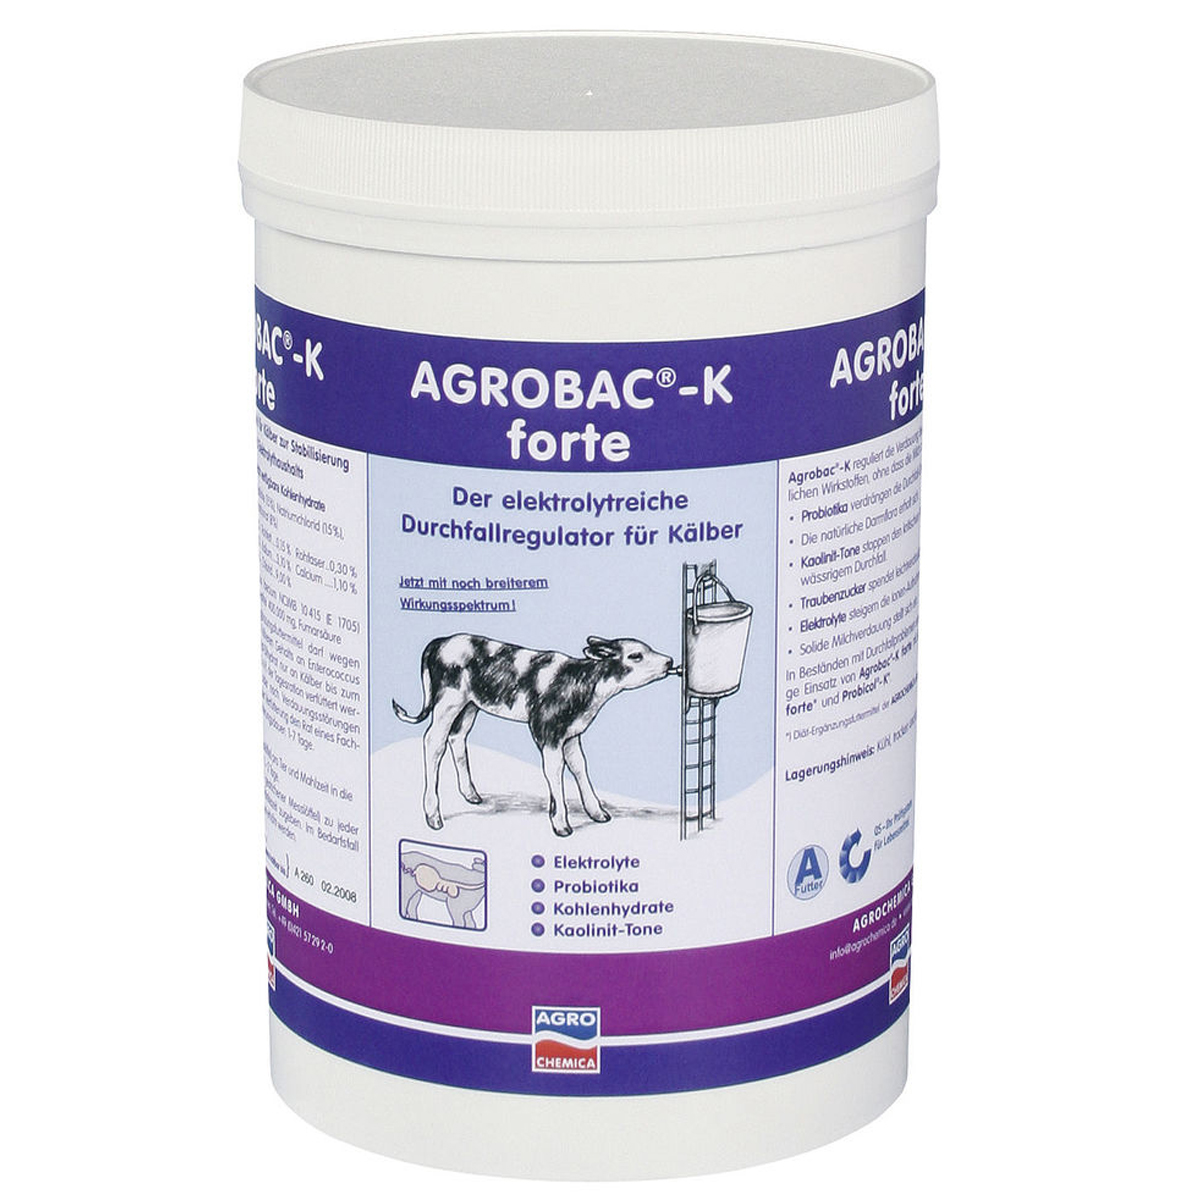 L'additif alimentaire Agrobac k-power contre la diarrhée 1 kg